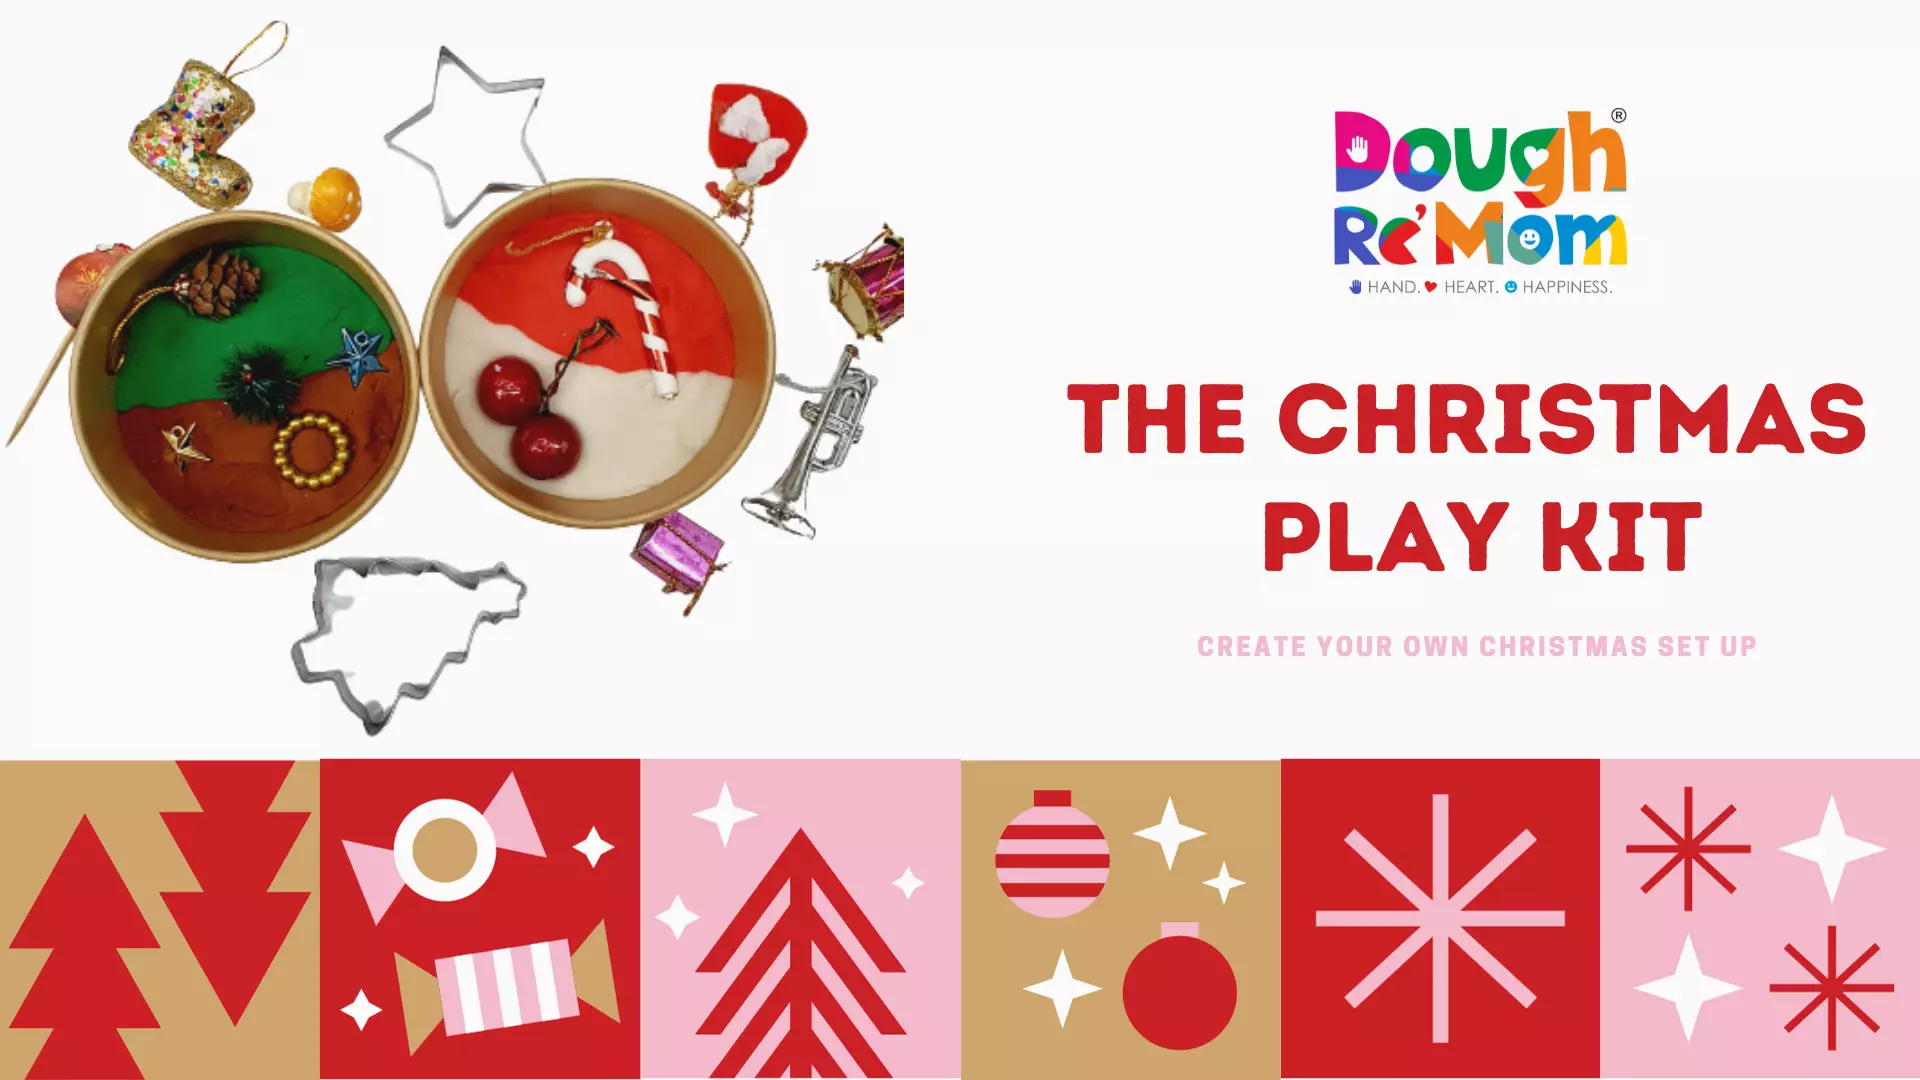 The Christmas Play kit